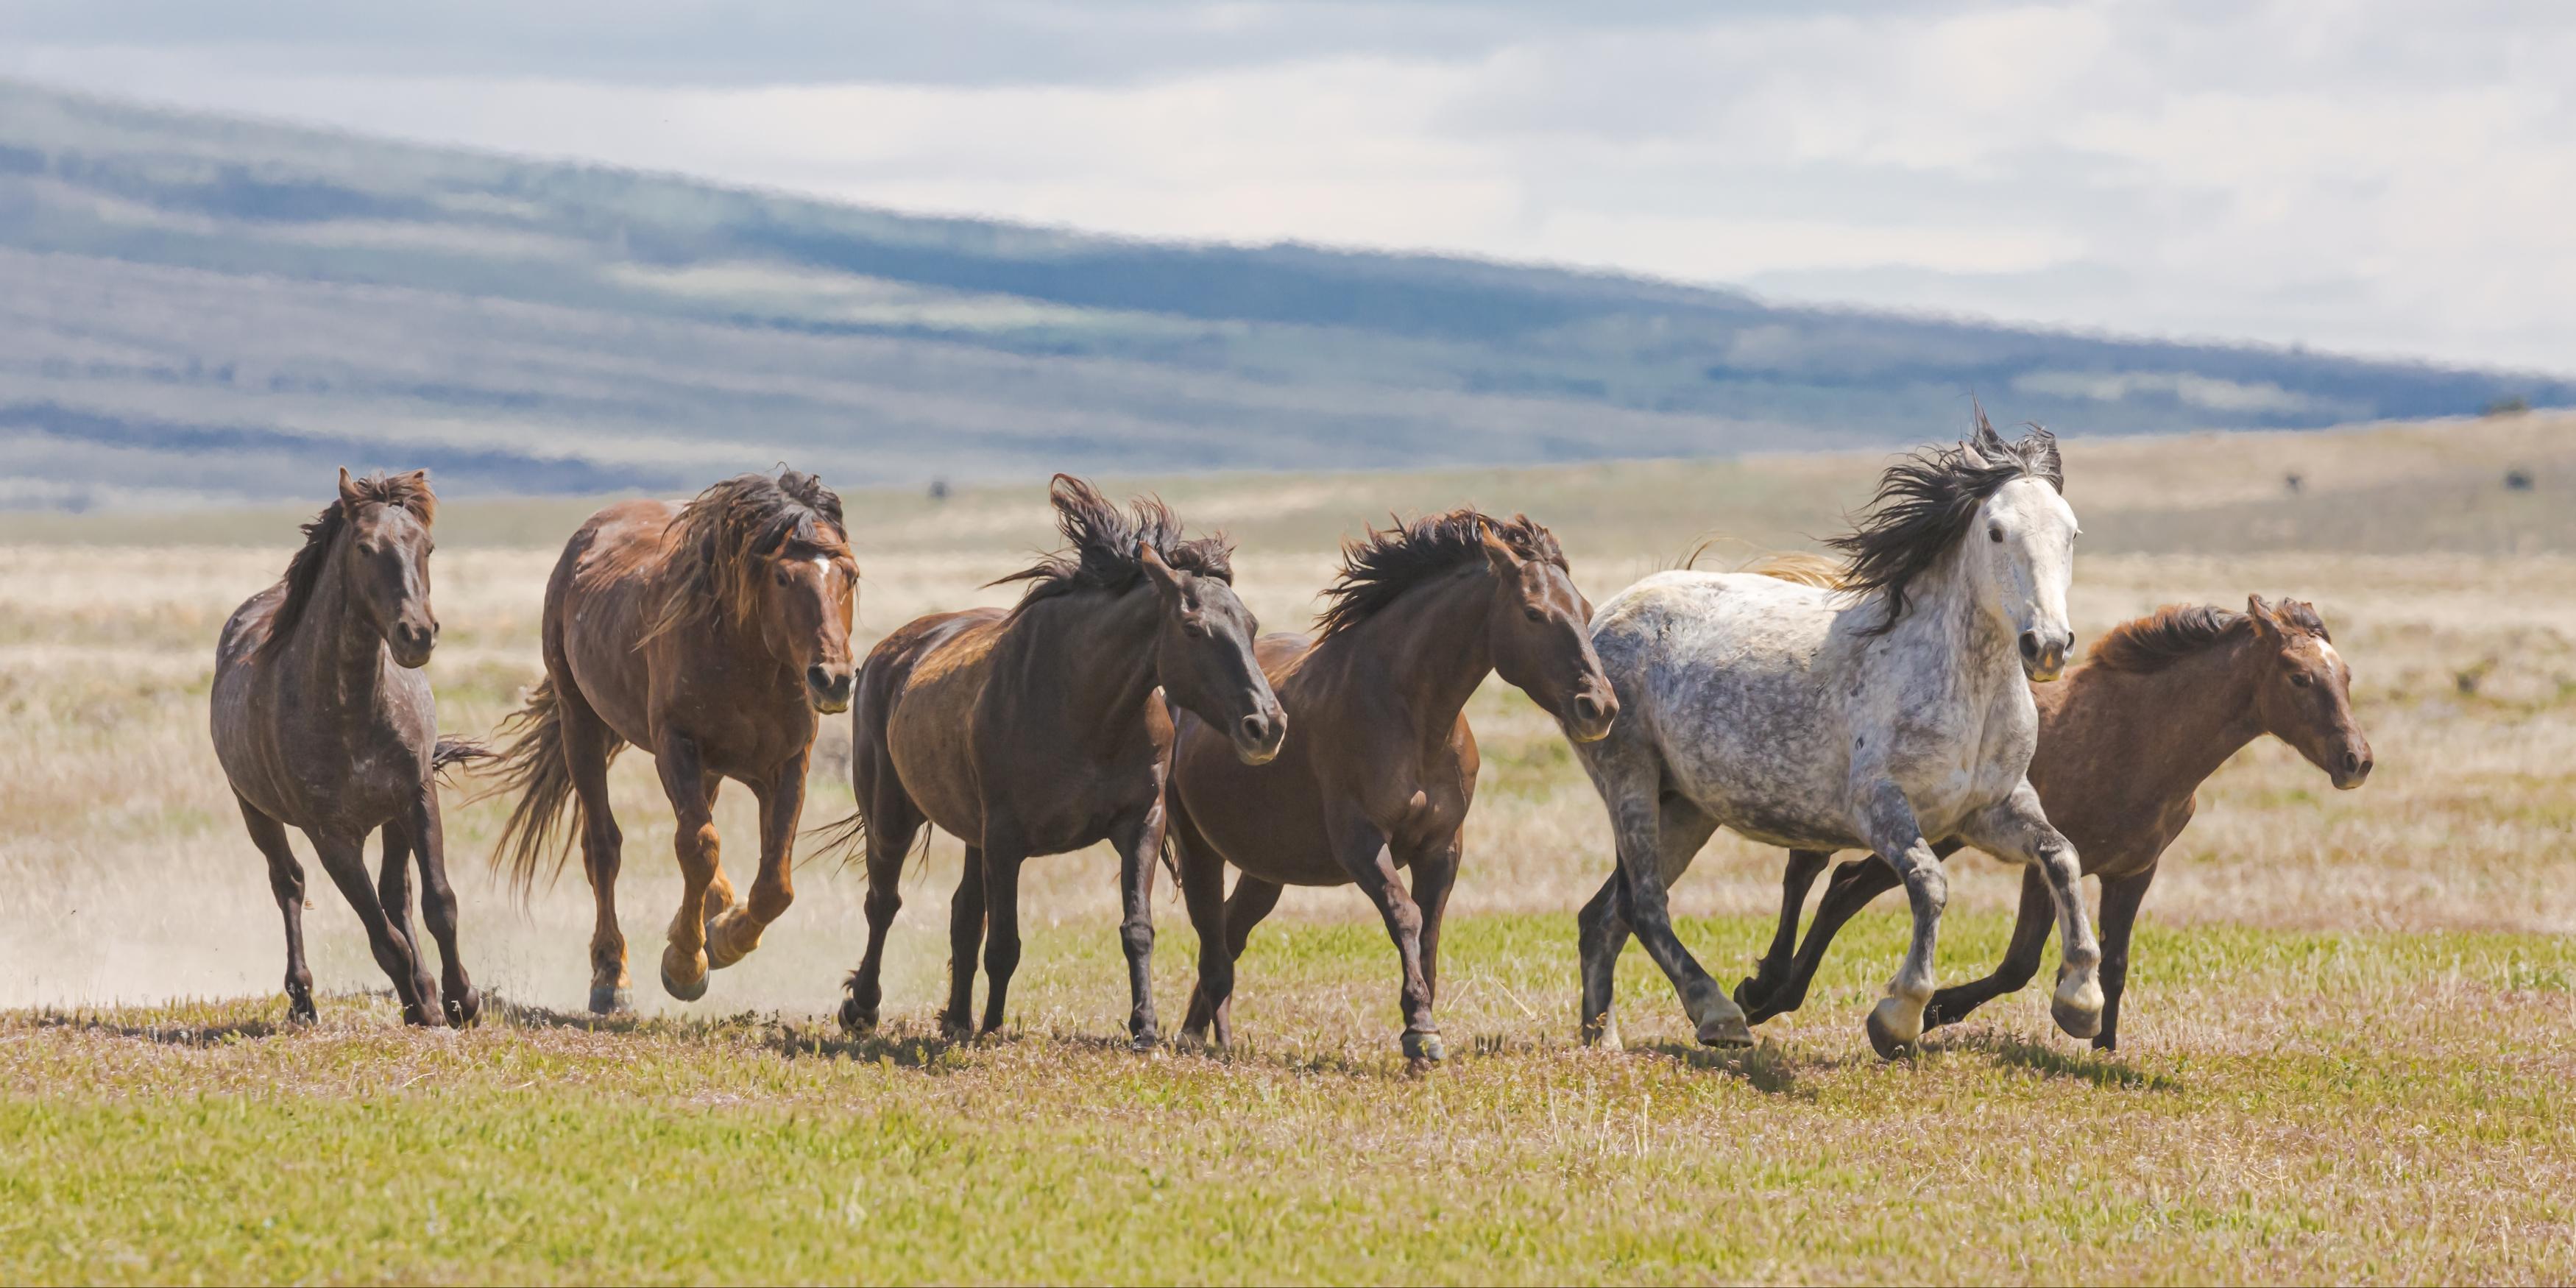 Guillermo Avila Paz Color Photograph - "Mustang Freedom" Photograph, Guillermo Avila, Western Wild American Horse 